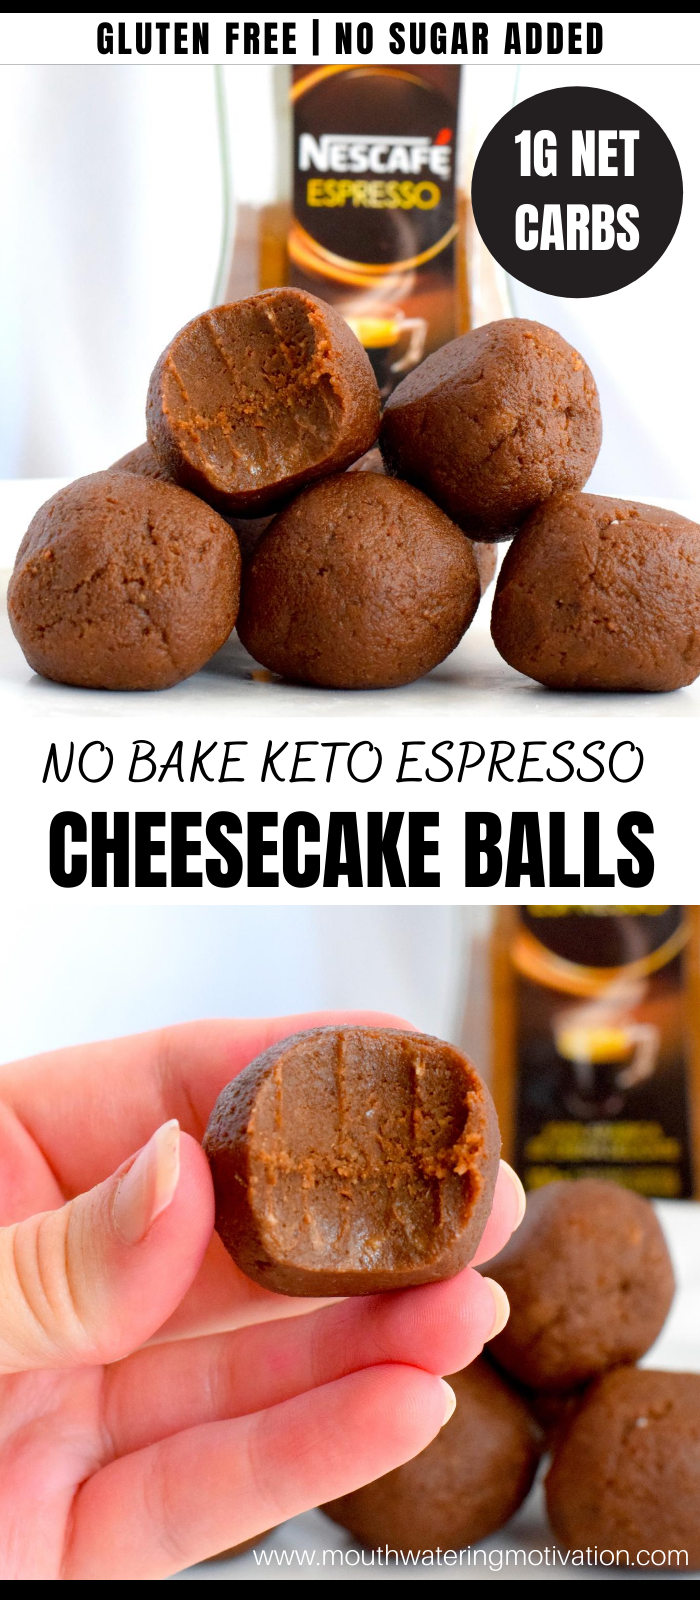 Keto Espresso Cheesecake Balls